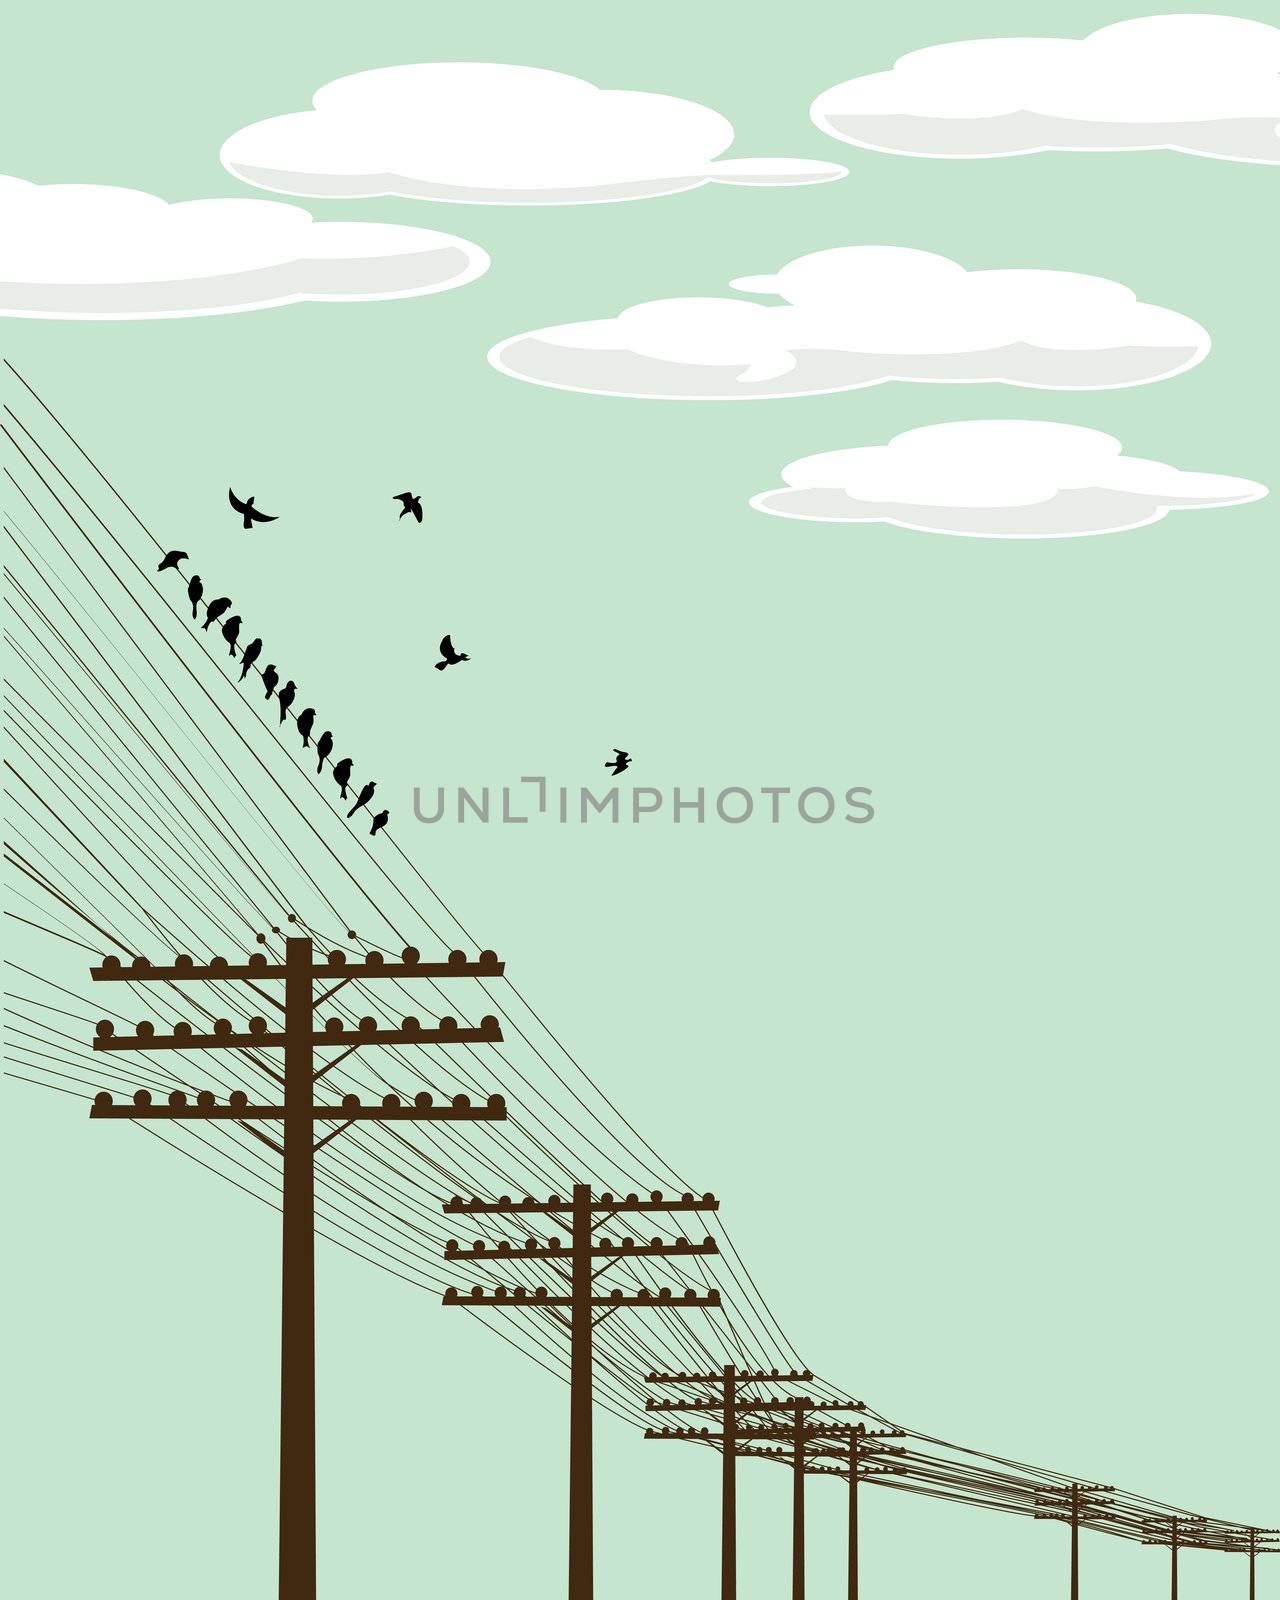 Flying birds by Lirch